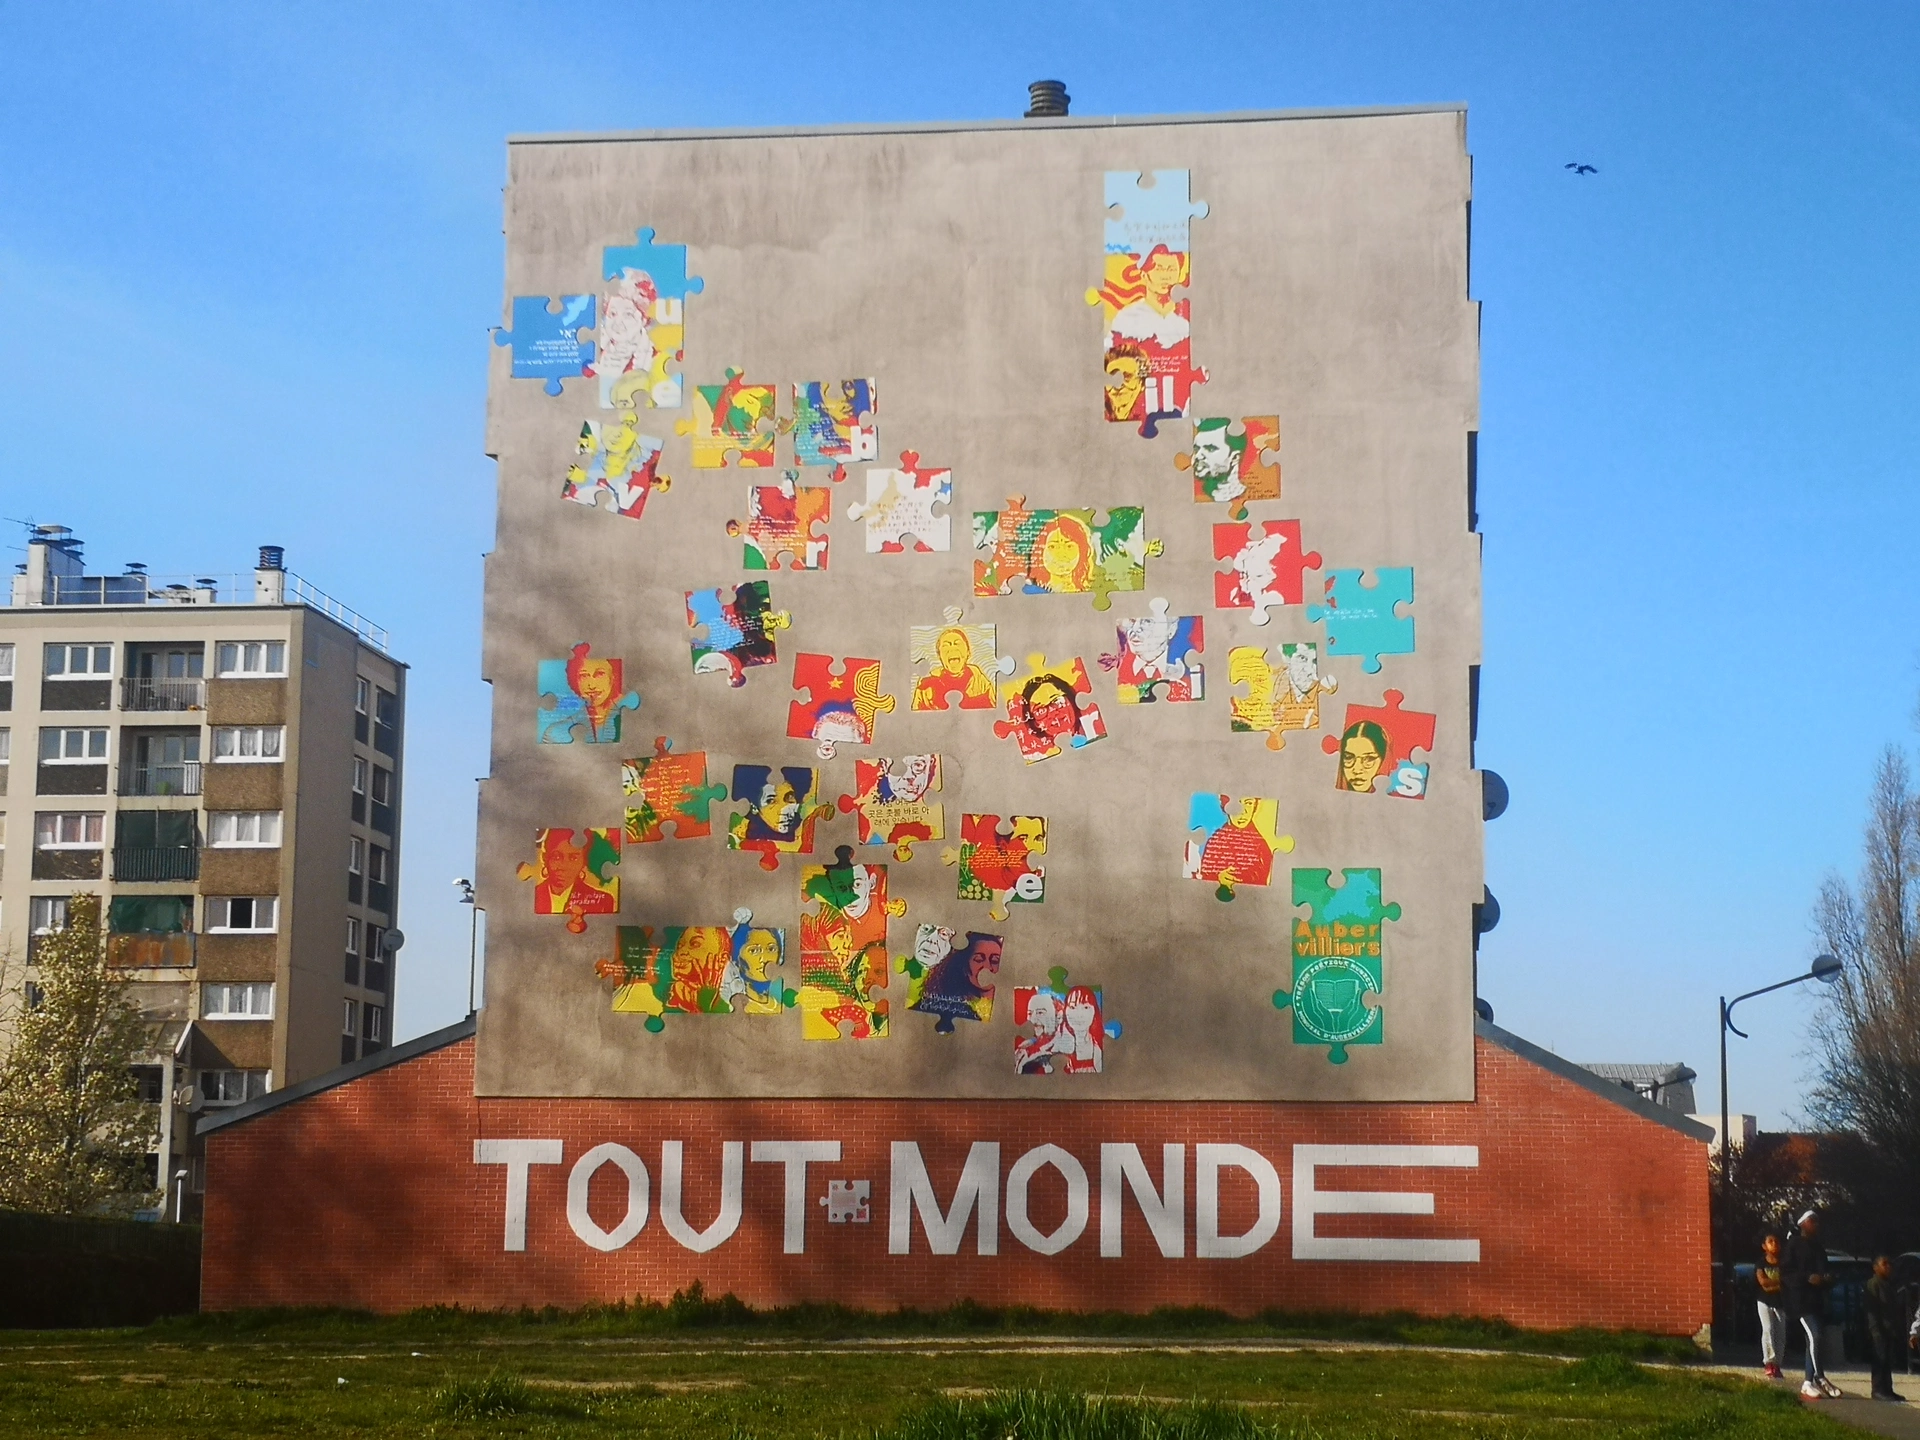 Oeuvre de Street Art réalisée par Les soeurs chevalme à Aubervilliers